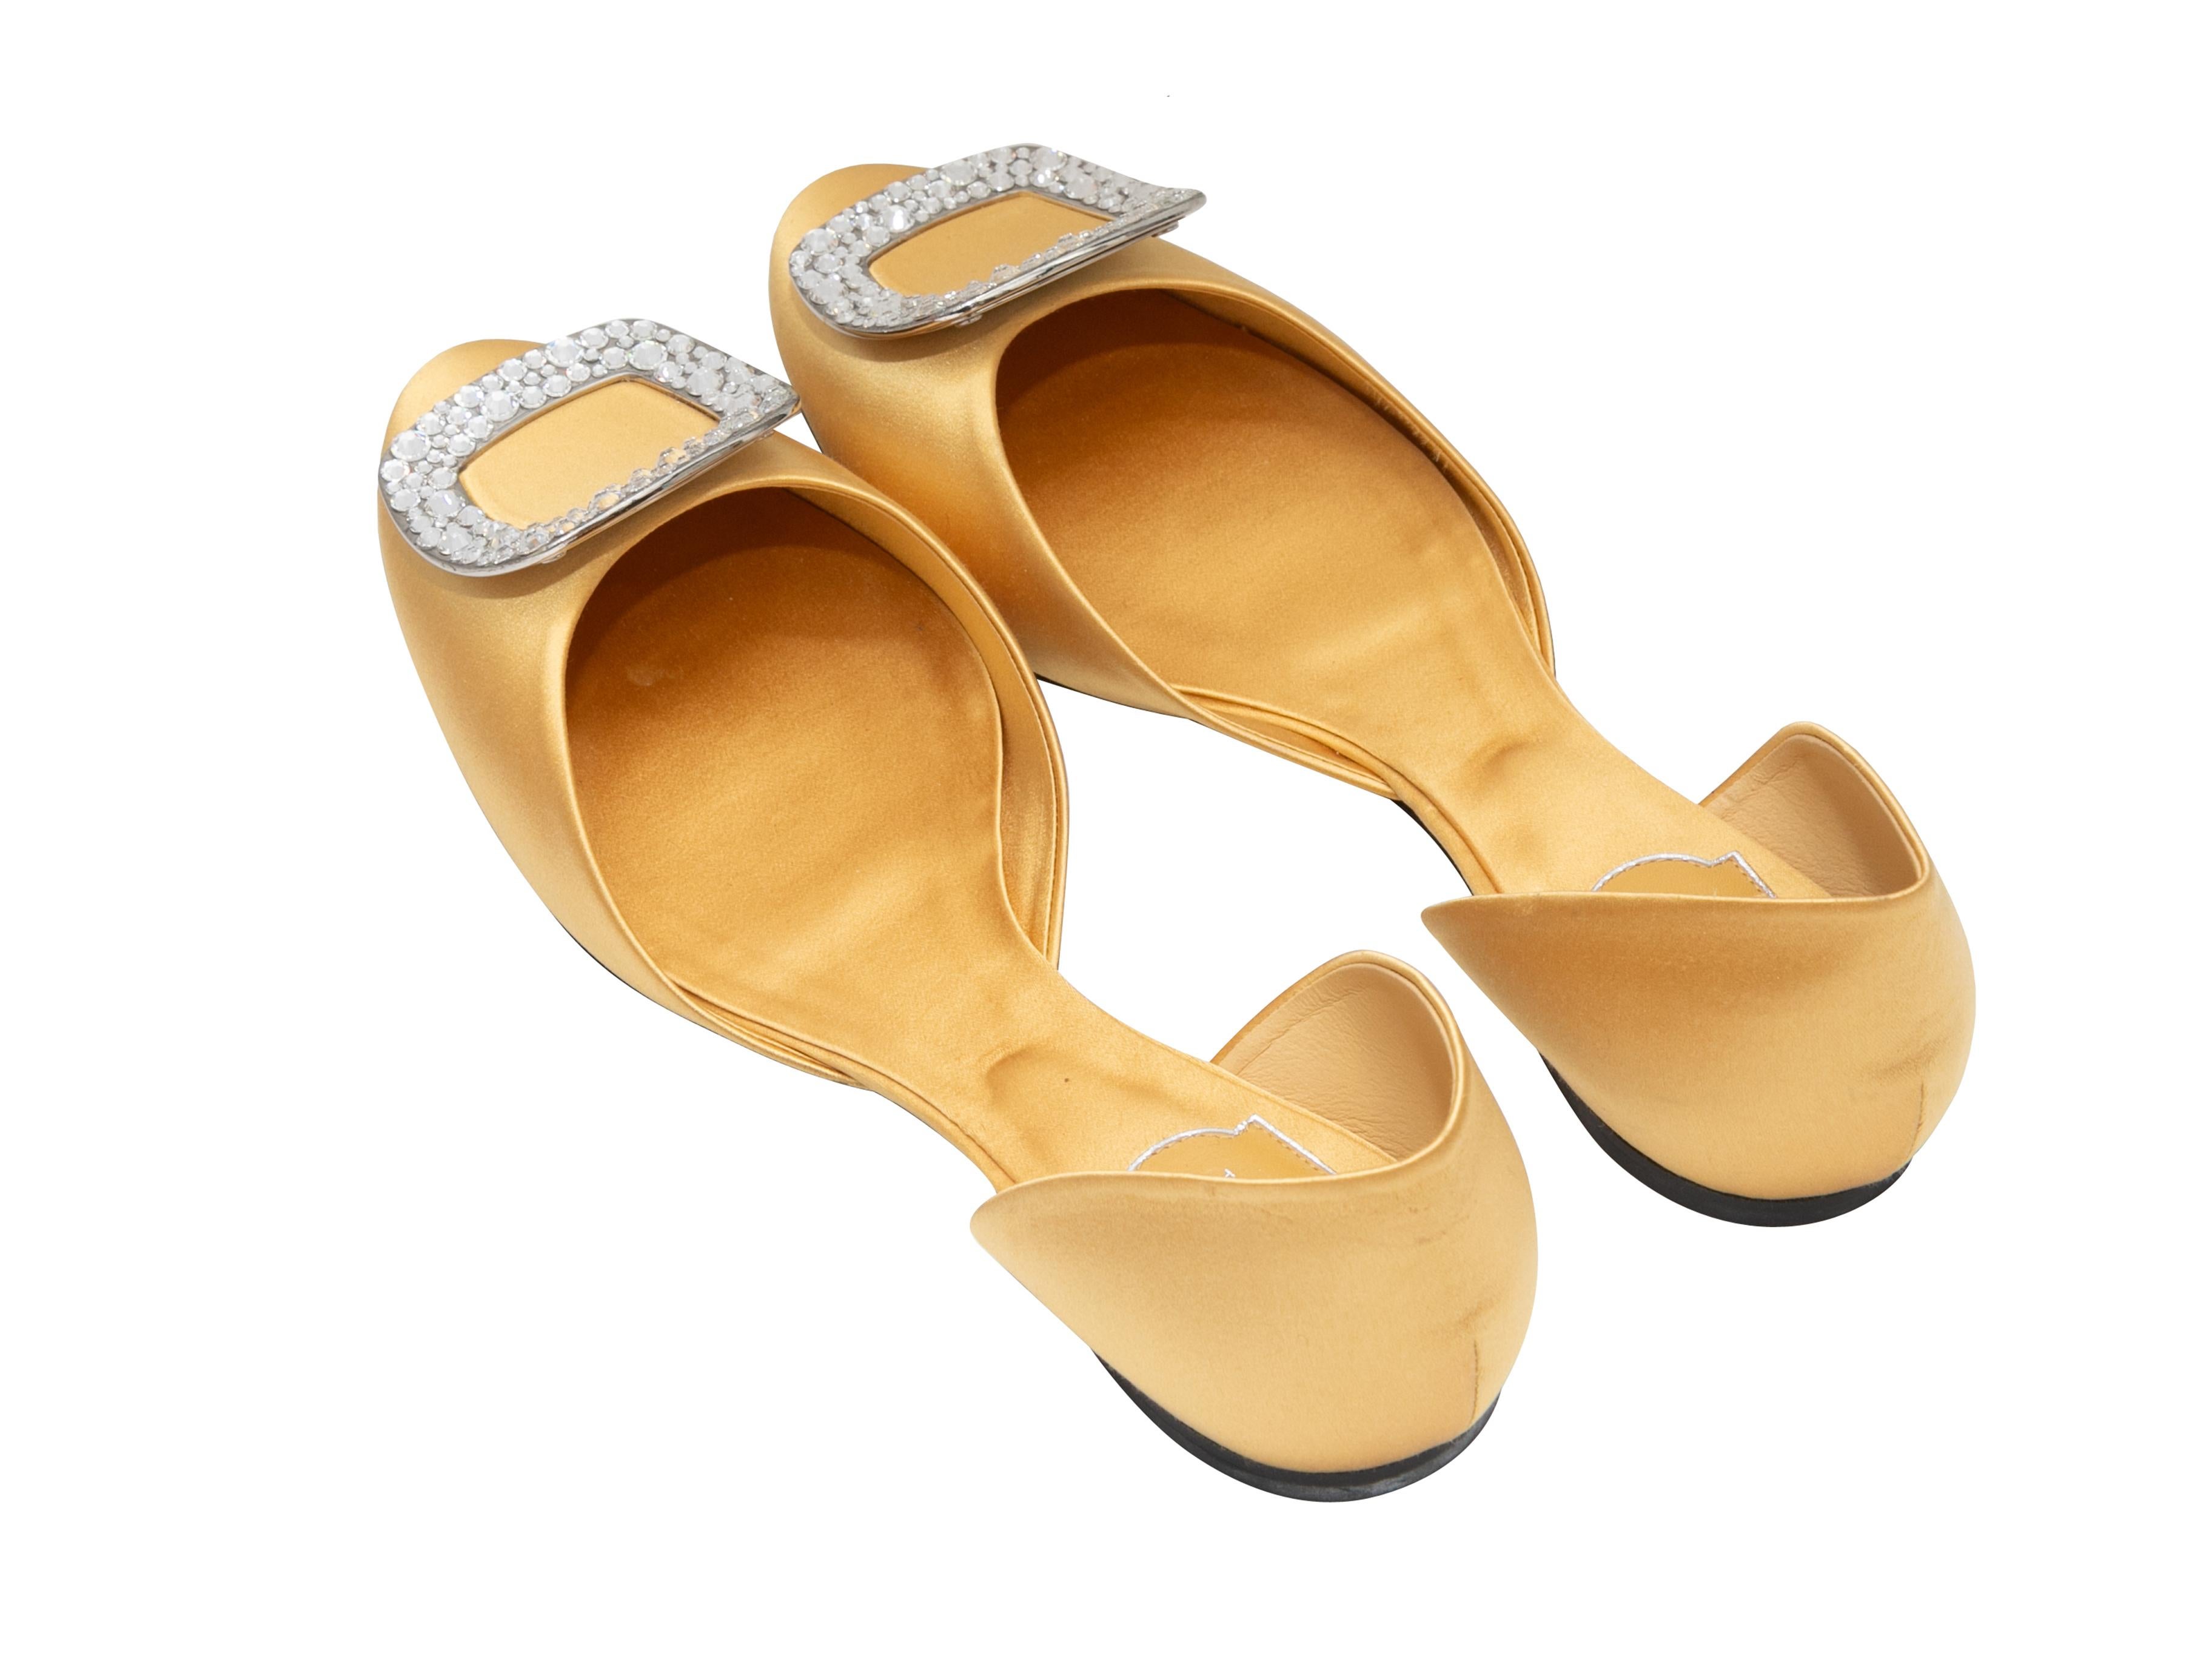 Ballerines d'Orsay en satin jaune de Roger Vivier. Boucles ornées de cristaux sur les orteils. Hauteur de talon de 0,25